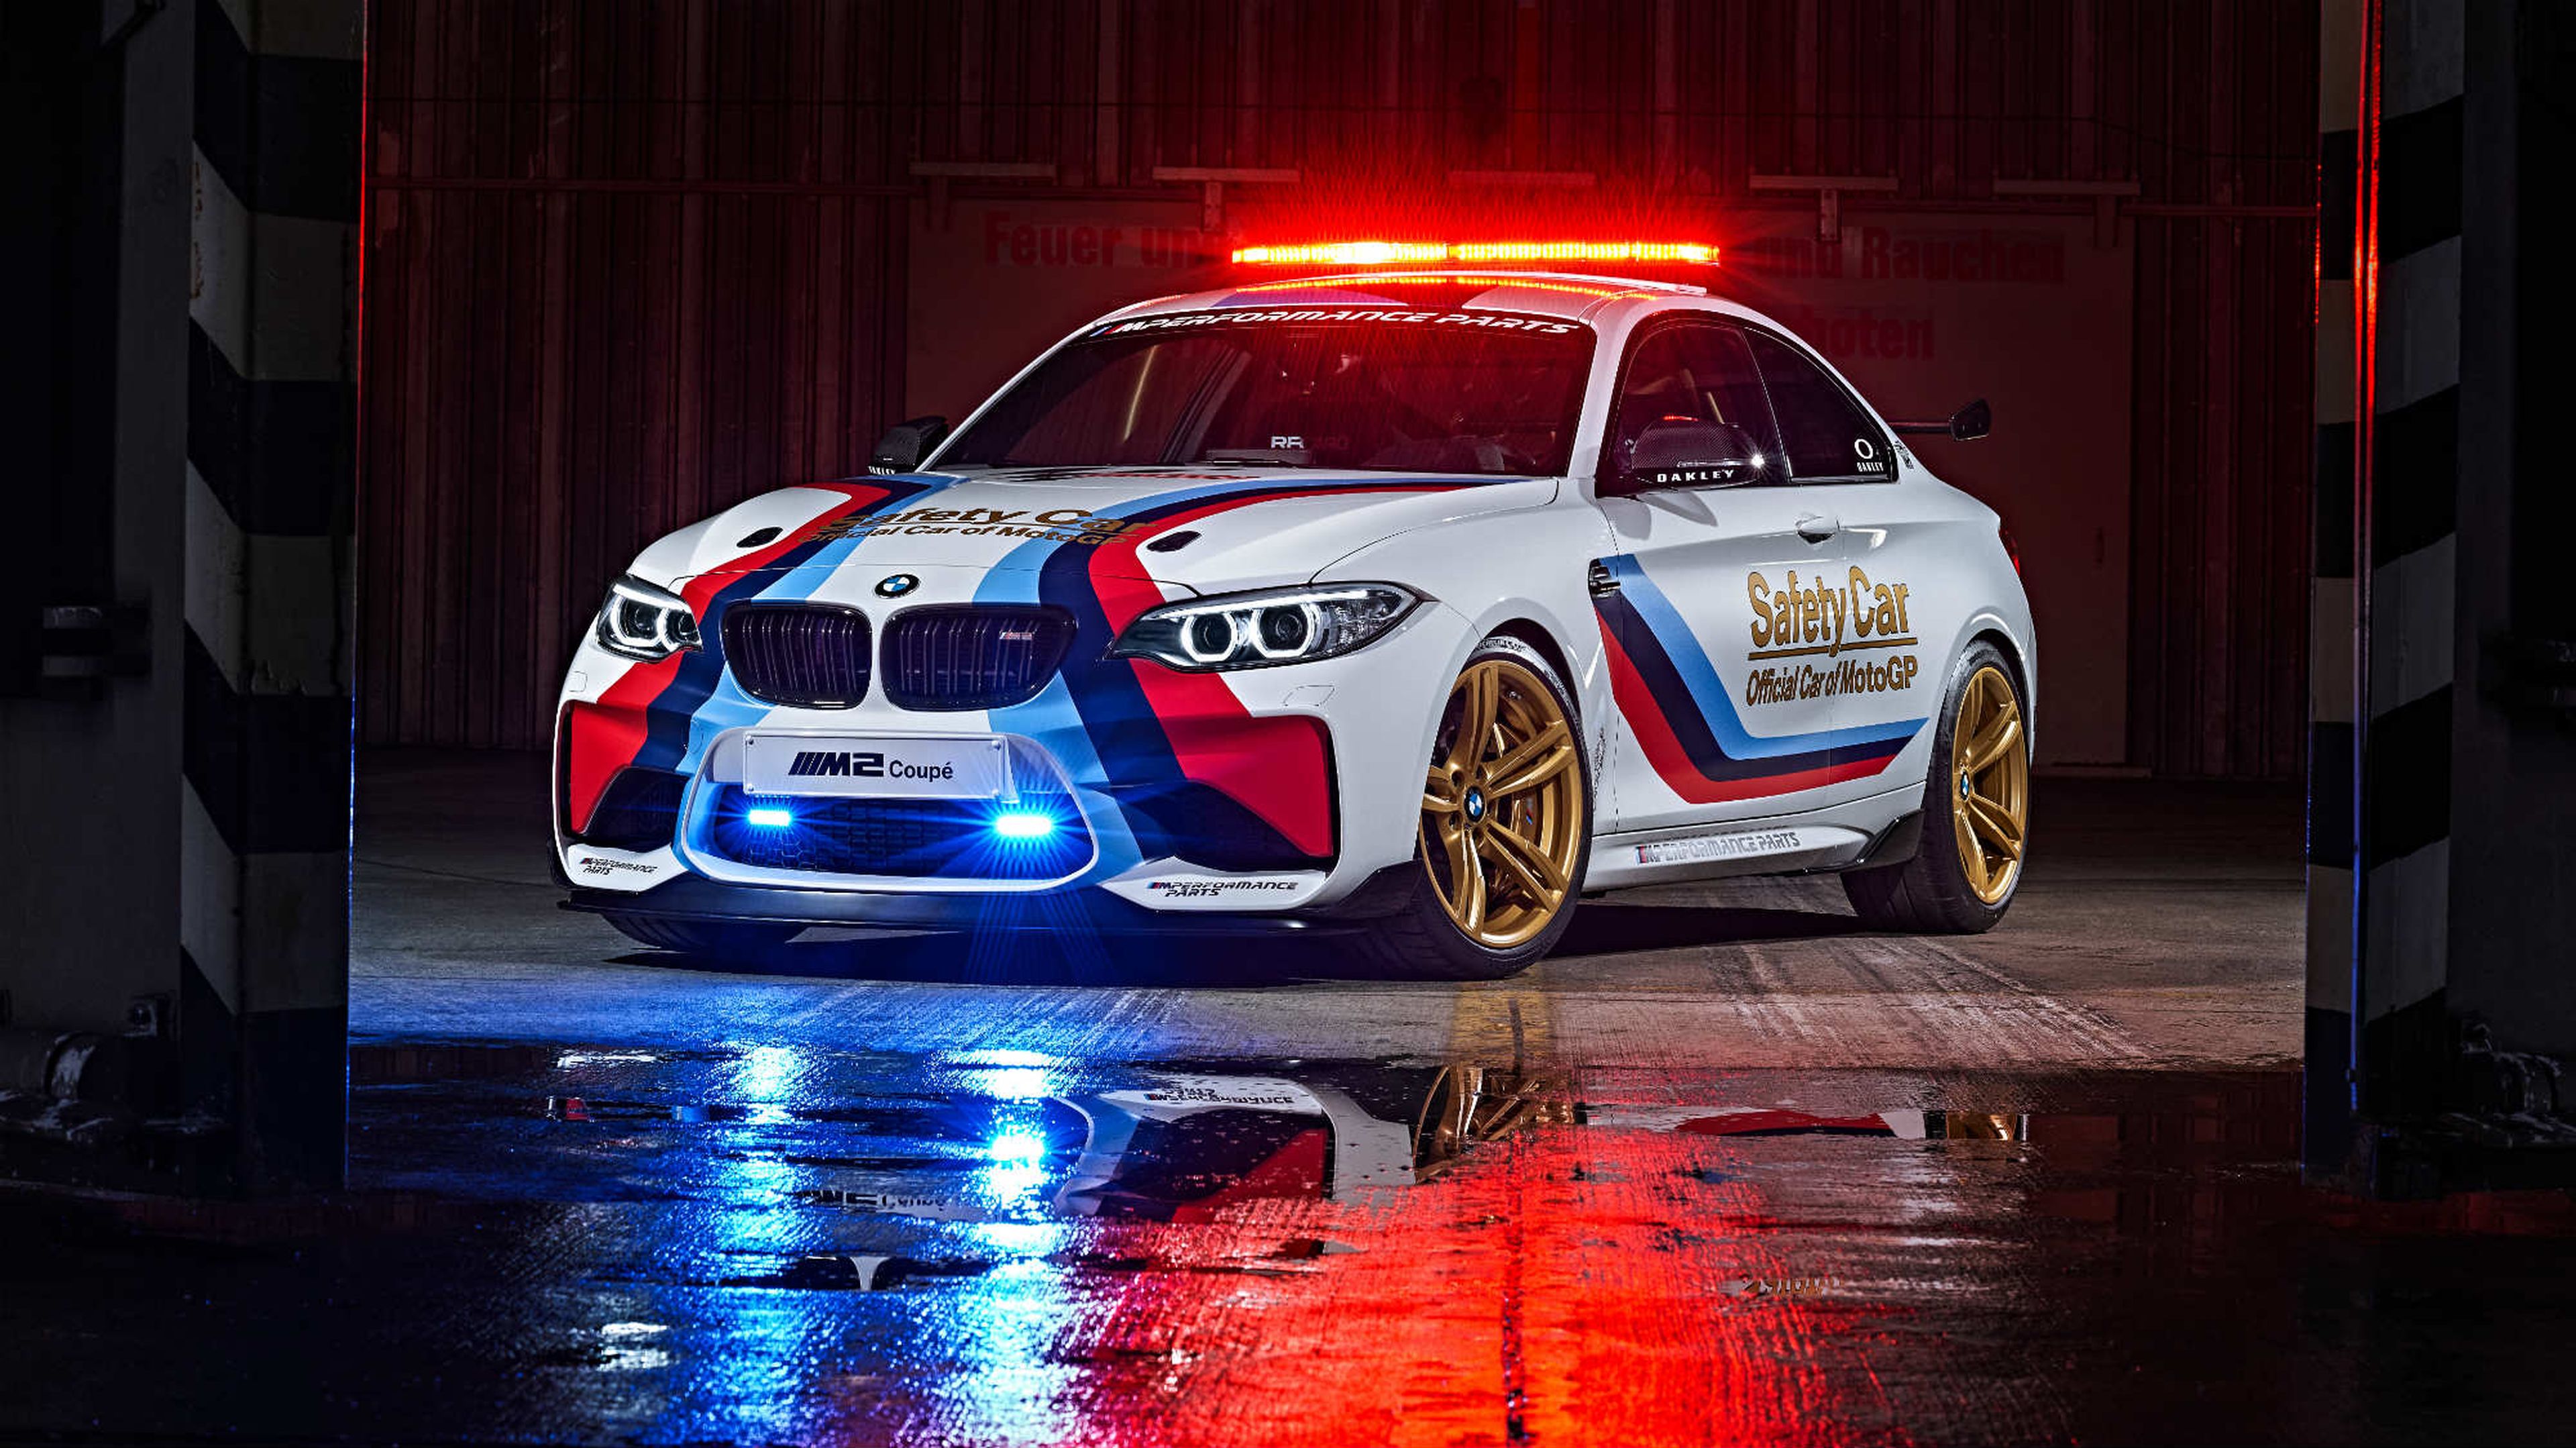 El próximo Safety Car de MotoGP será el BMW M2 Coupé.